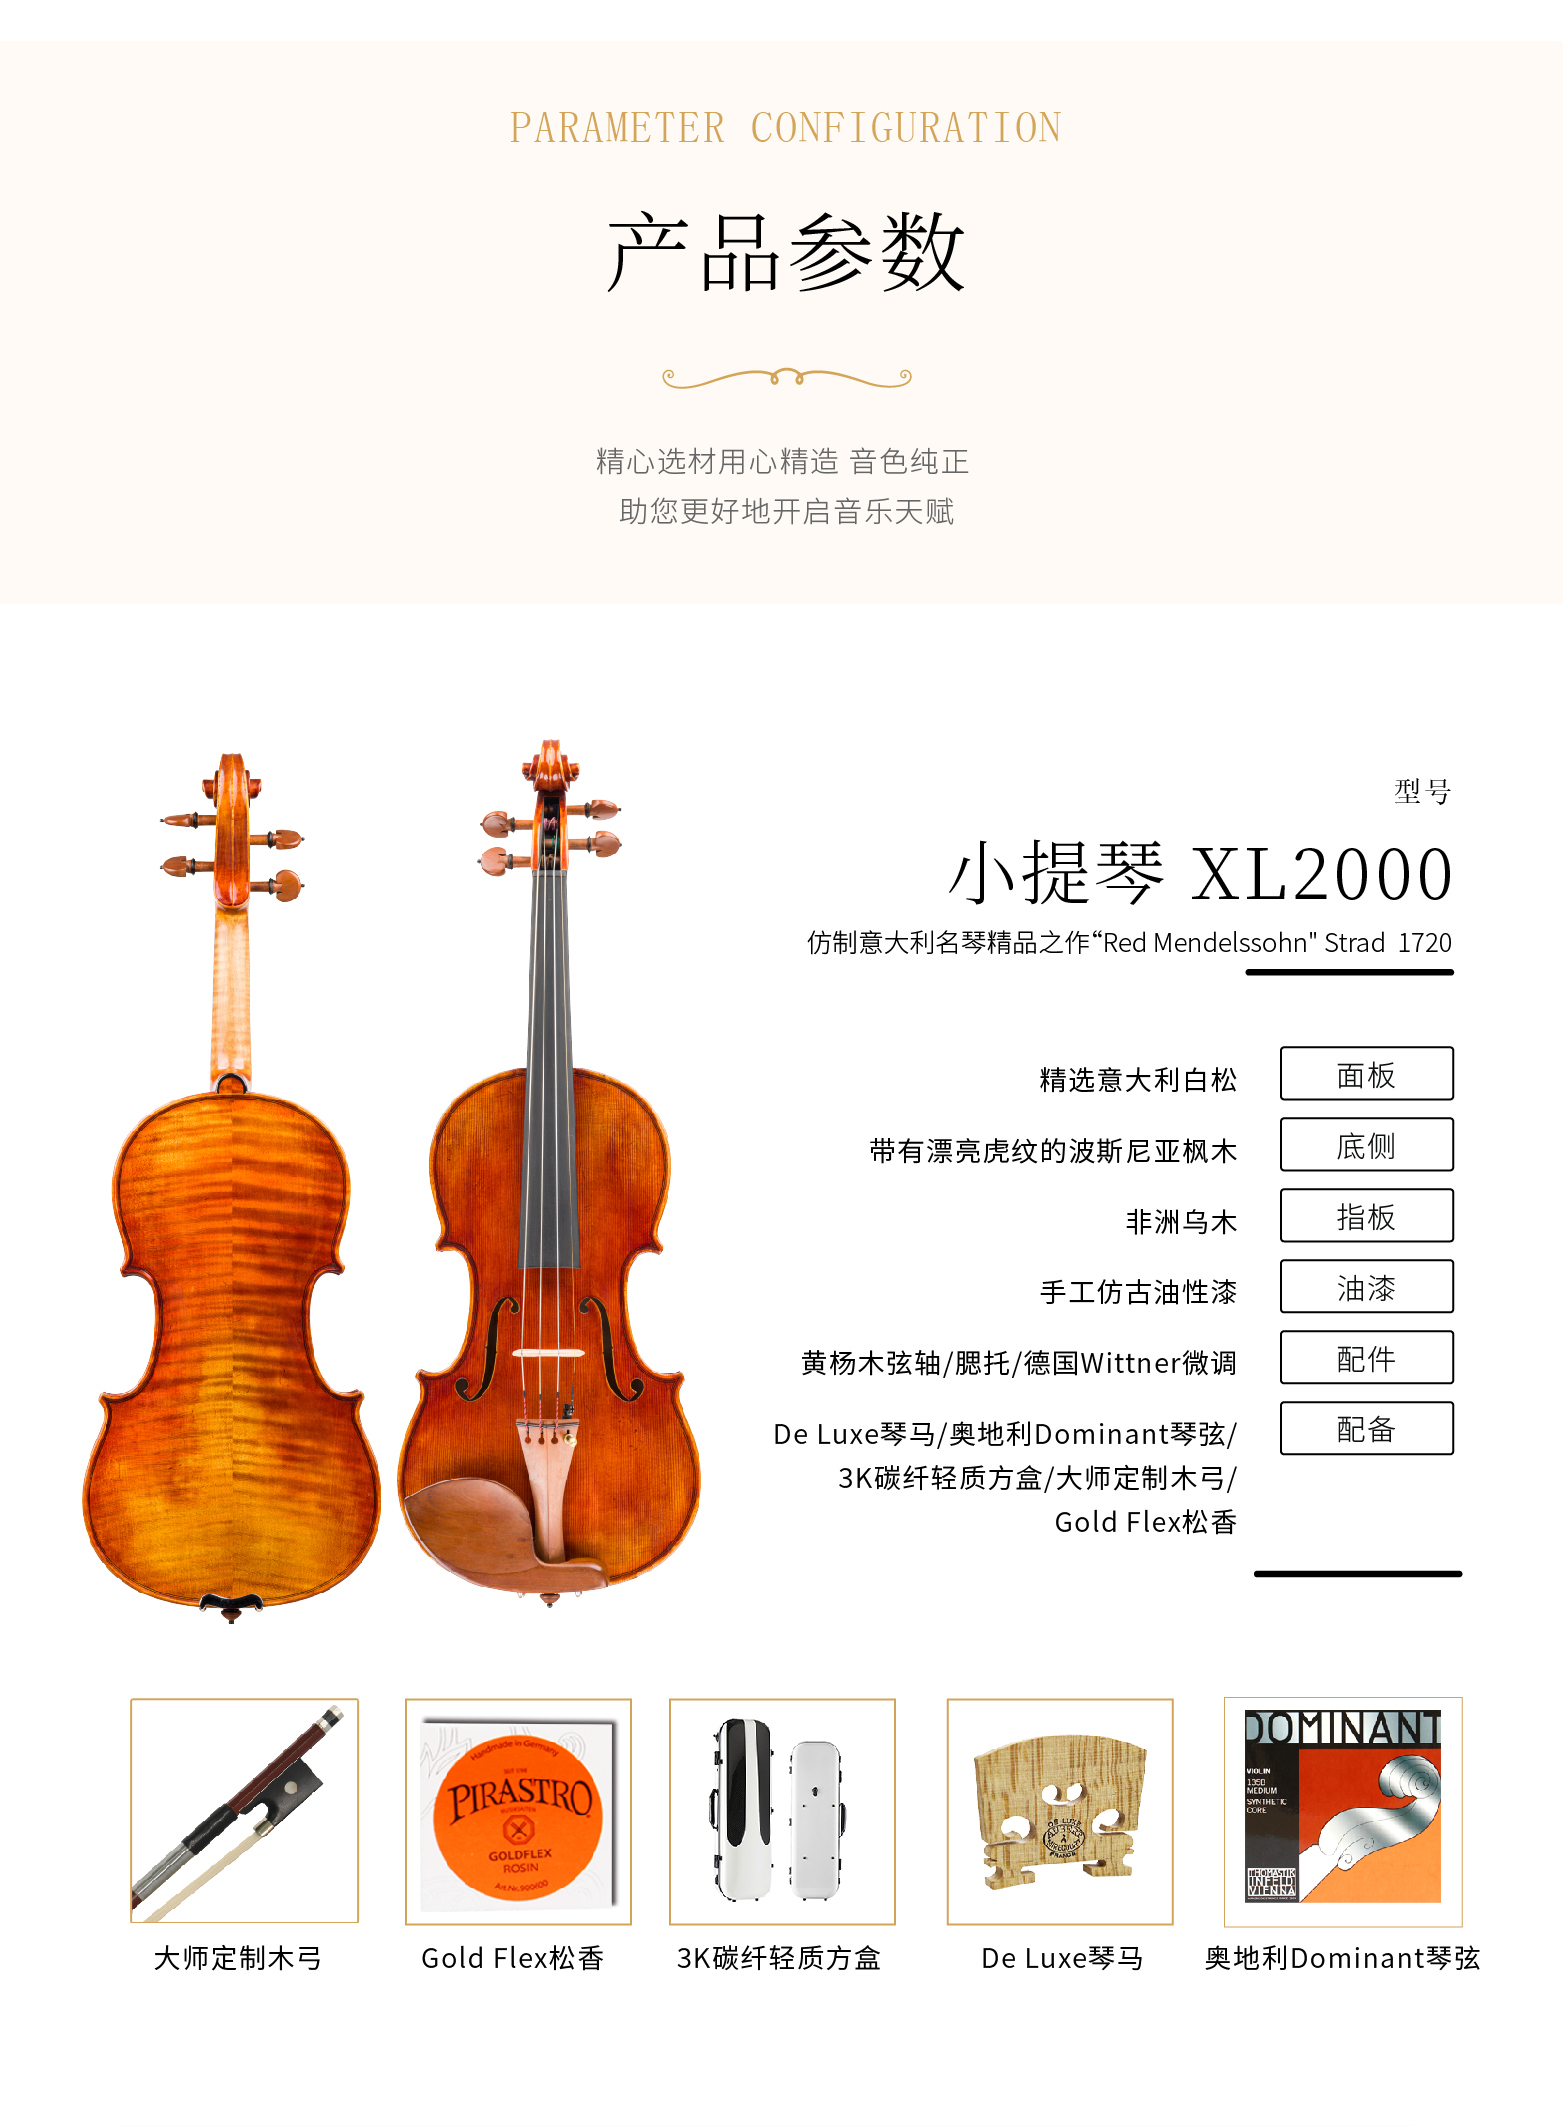 熙珑乐器专营店-详情-v1-2_XL2000小提琴_PC-副本-2_03.jpg